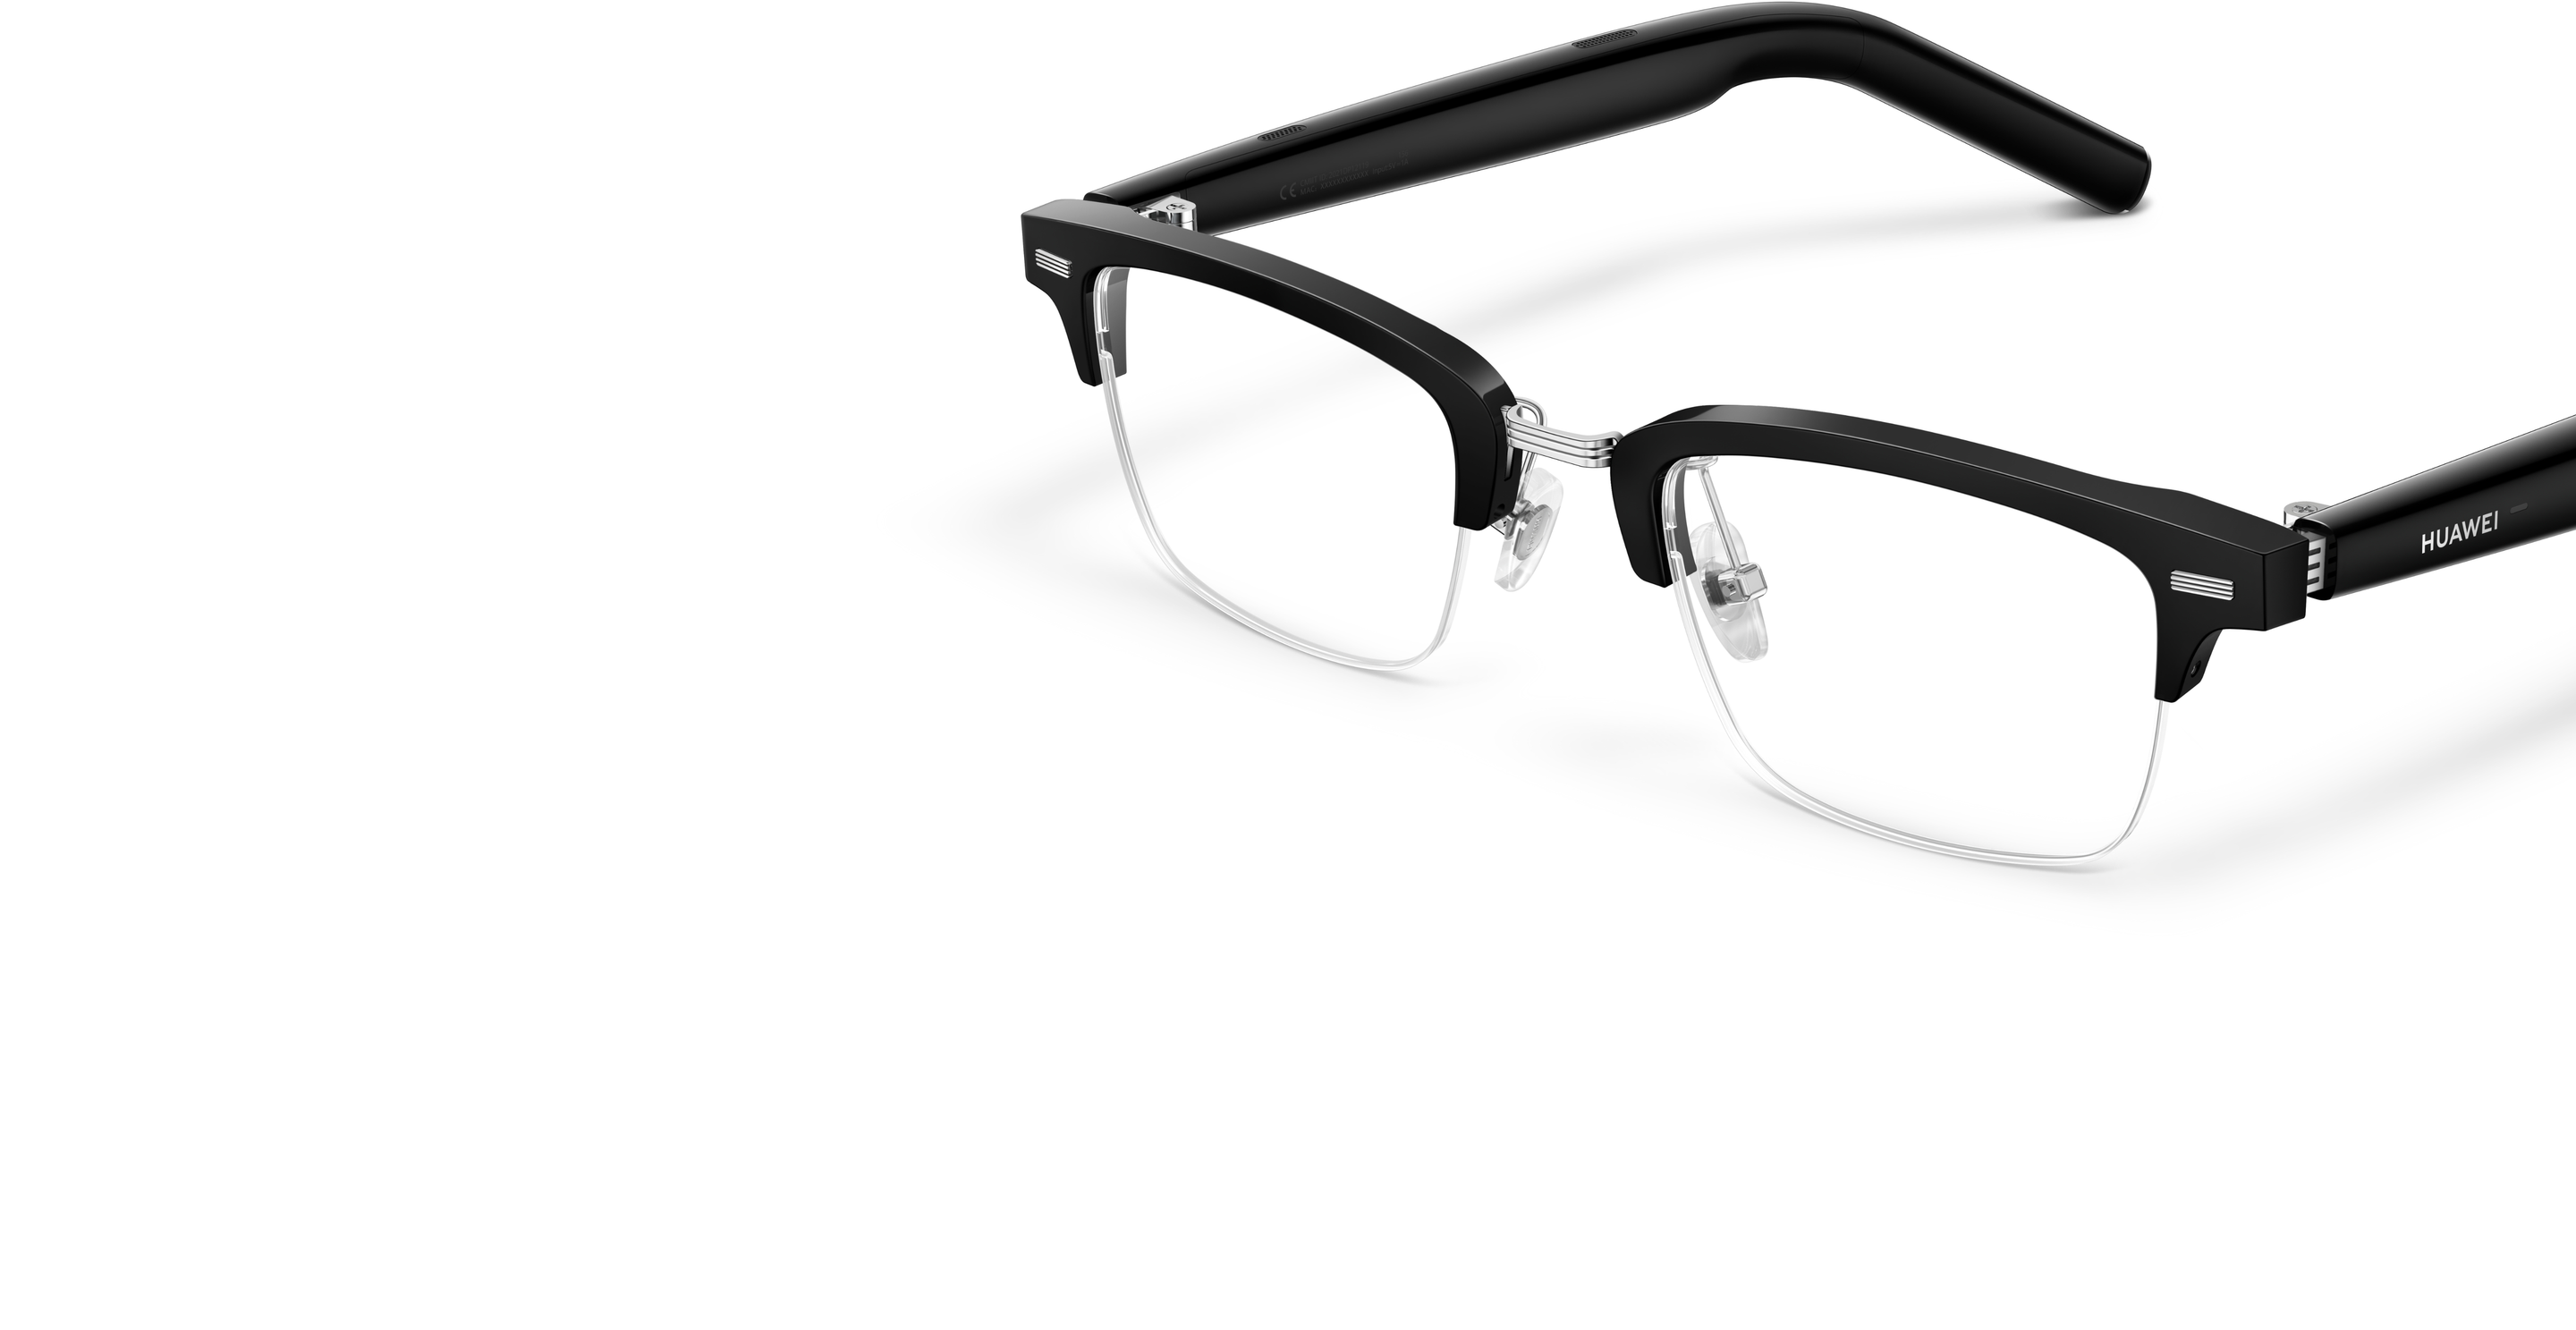 Próximo lanzamiento de las gafas inteligentes Huawei Eyewear 2 con lentes  graduadas -  News